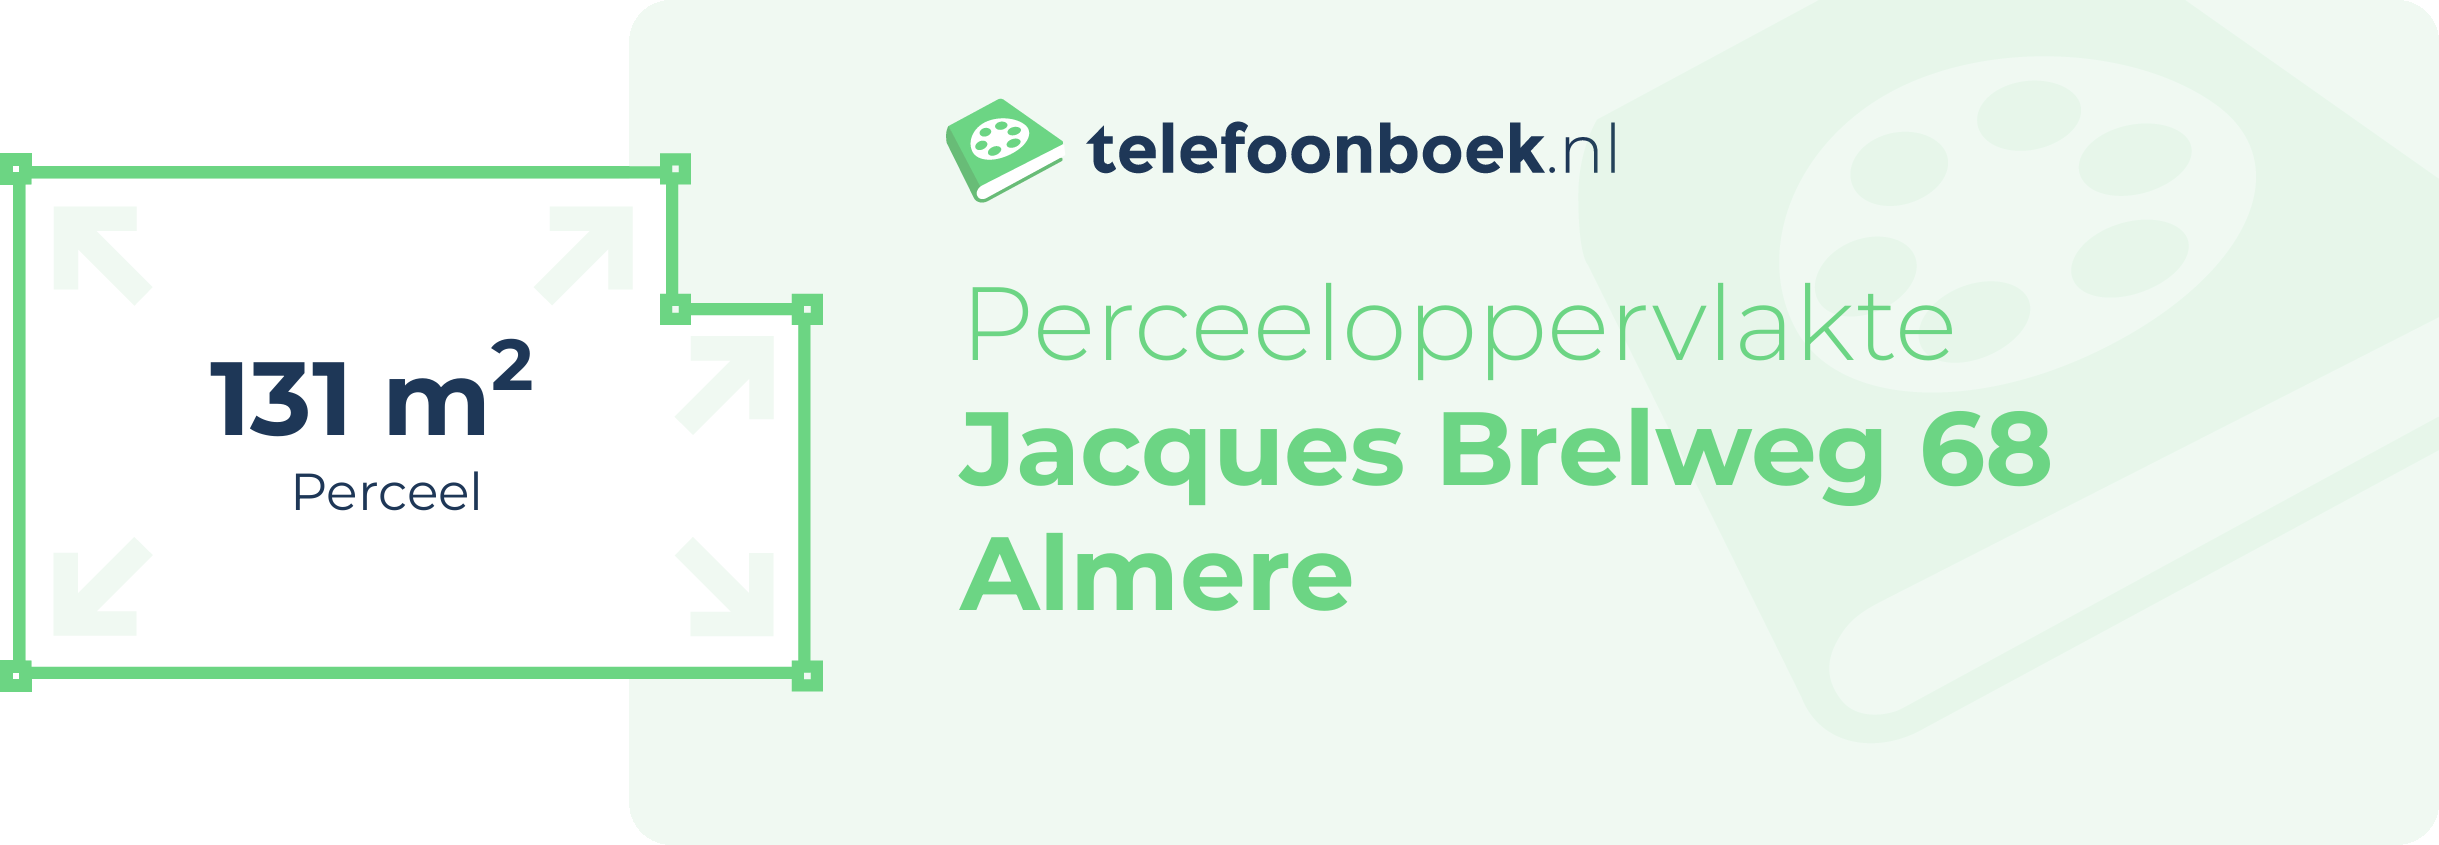 Perceeloppervlakte Jacques Brelweg 68 Almere